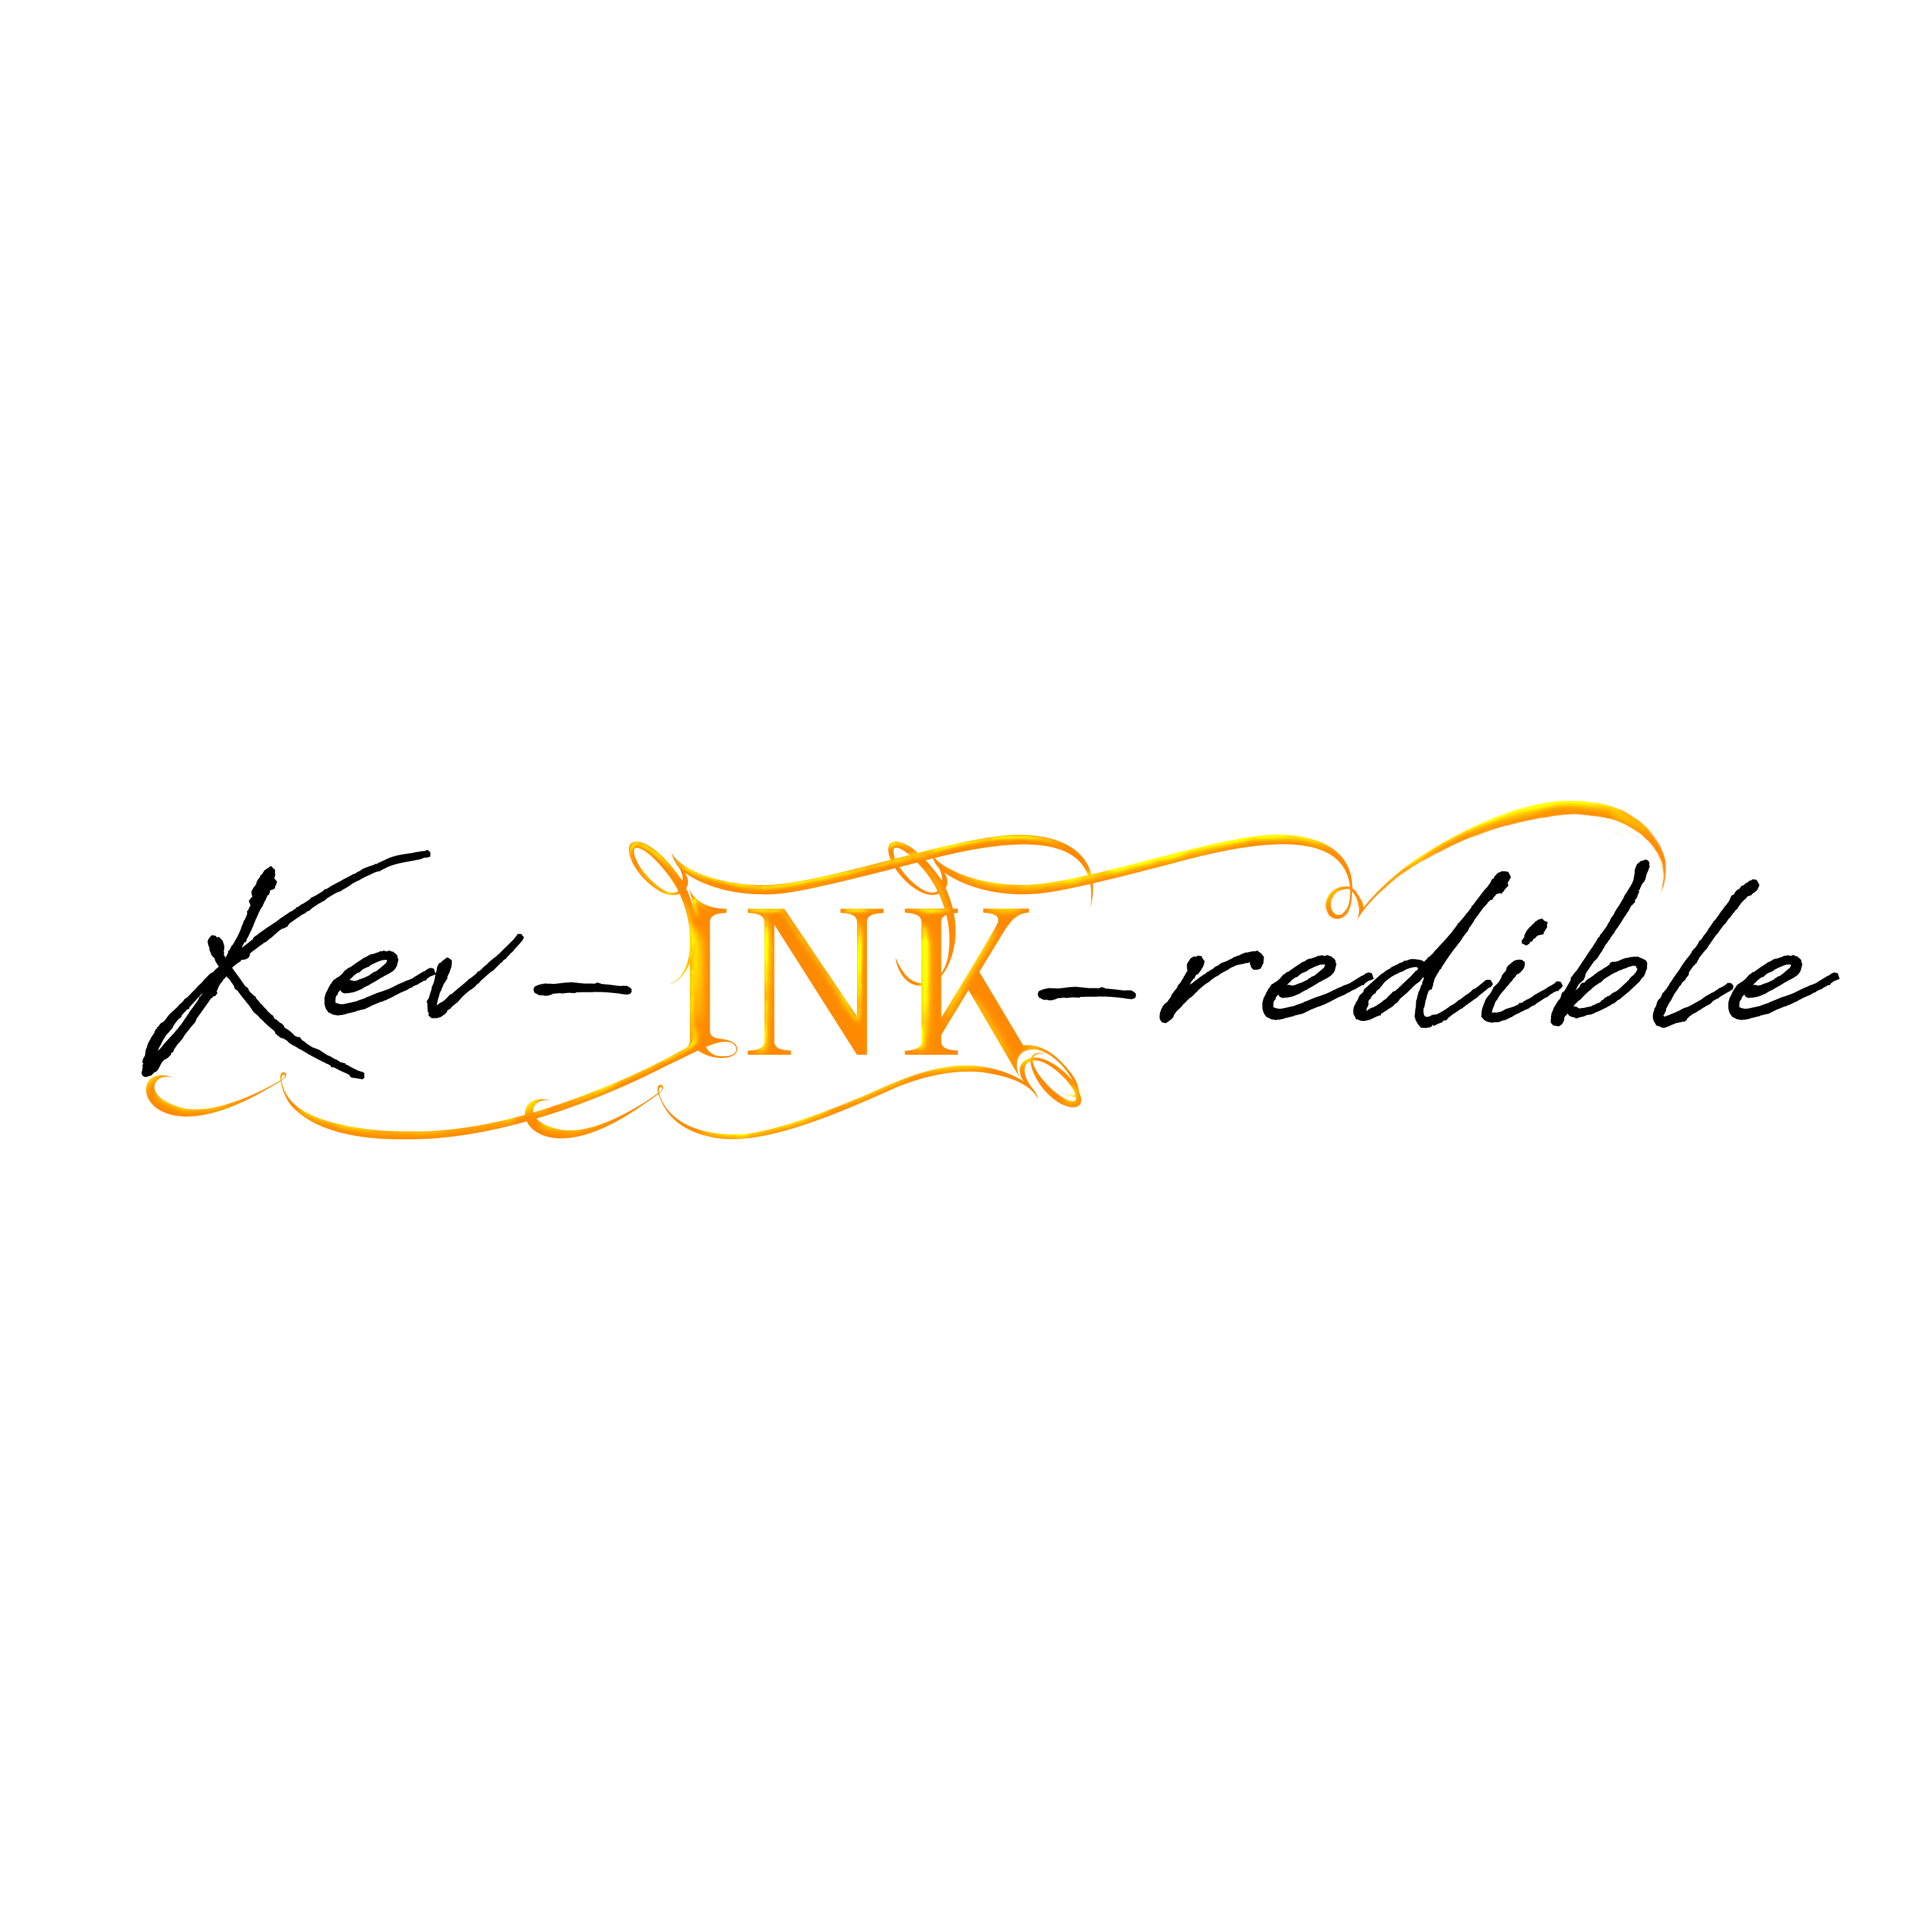 Kev-INK-redible Logo